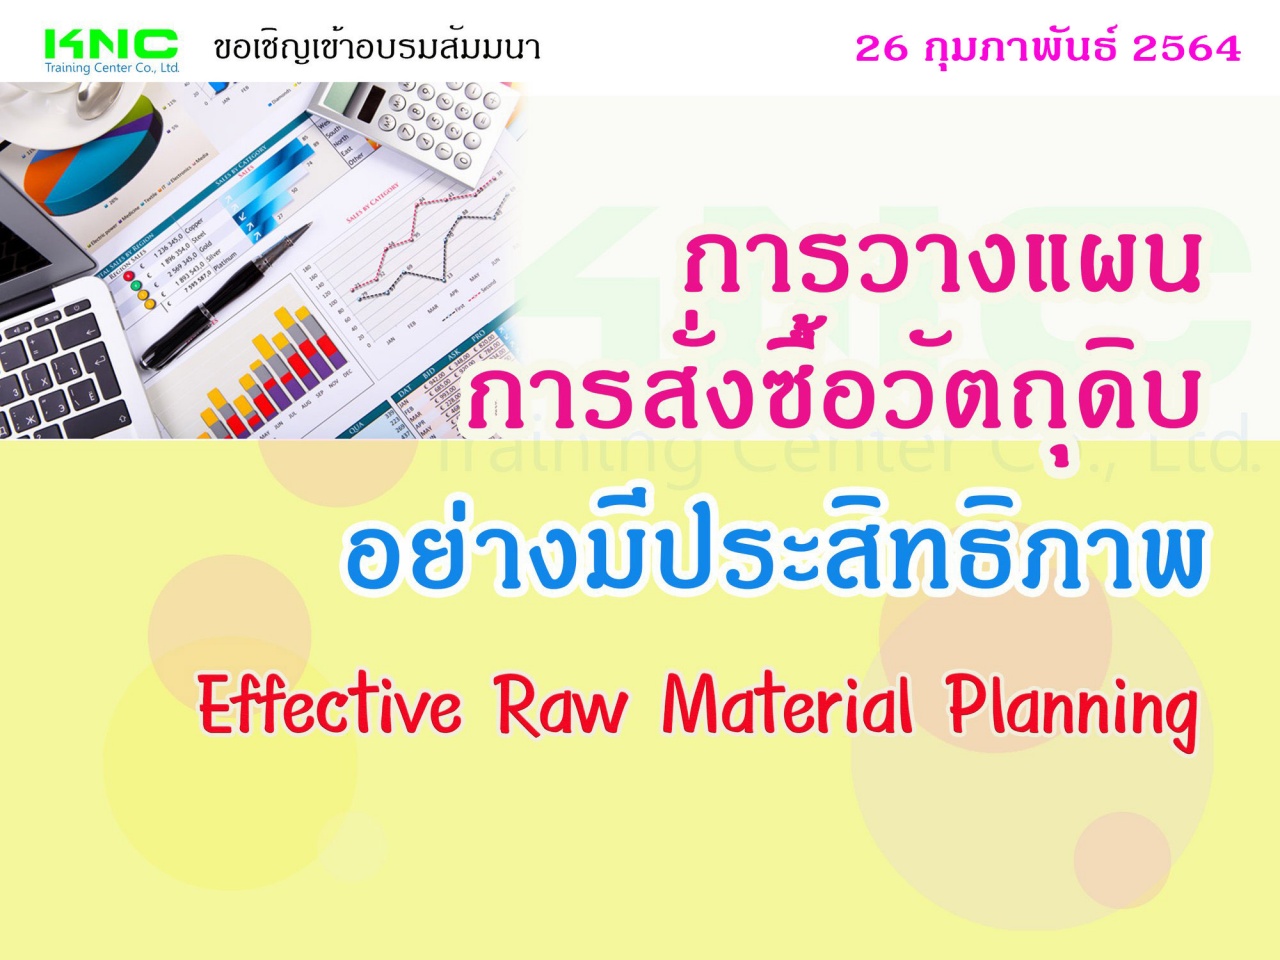 การวางแผนการสั่งซื้อวัตถุดิบอย่างมีประสิทธิภาพ (Effective Raw Material Planning)